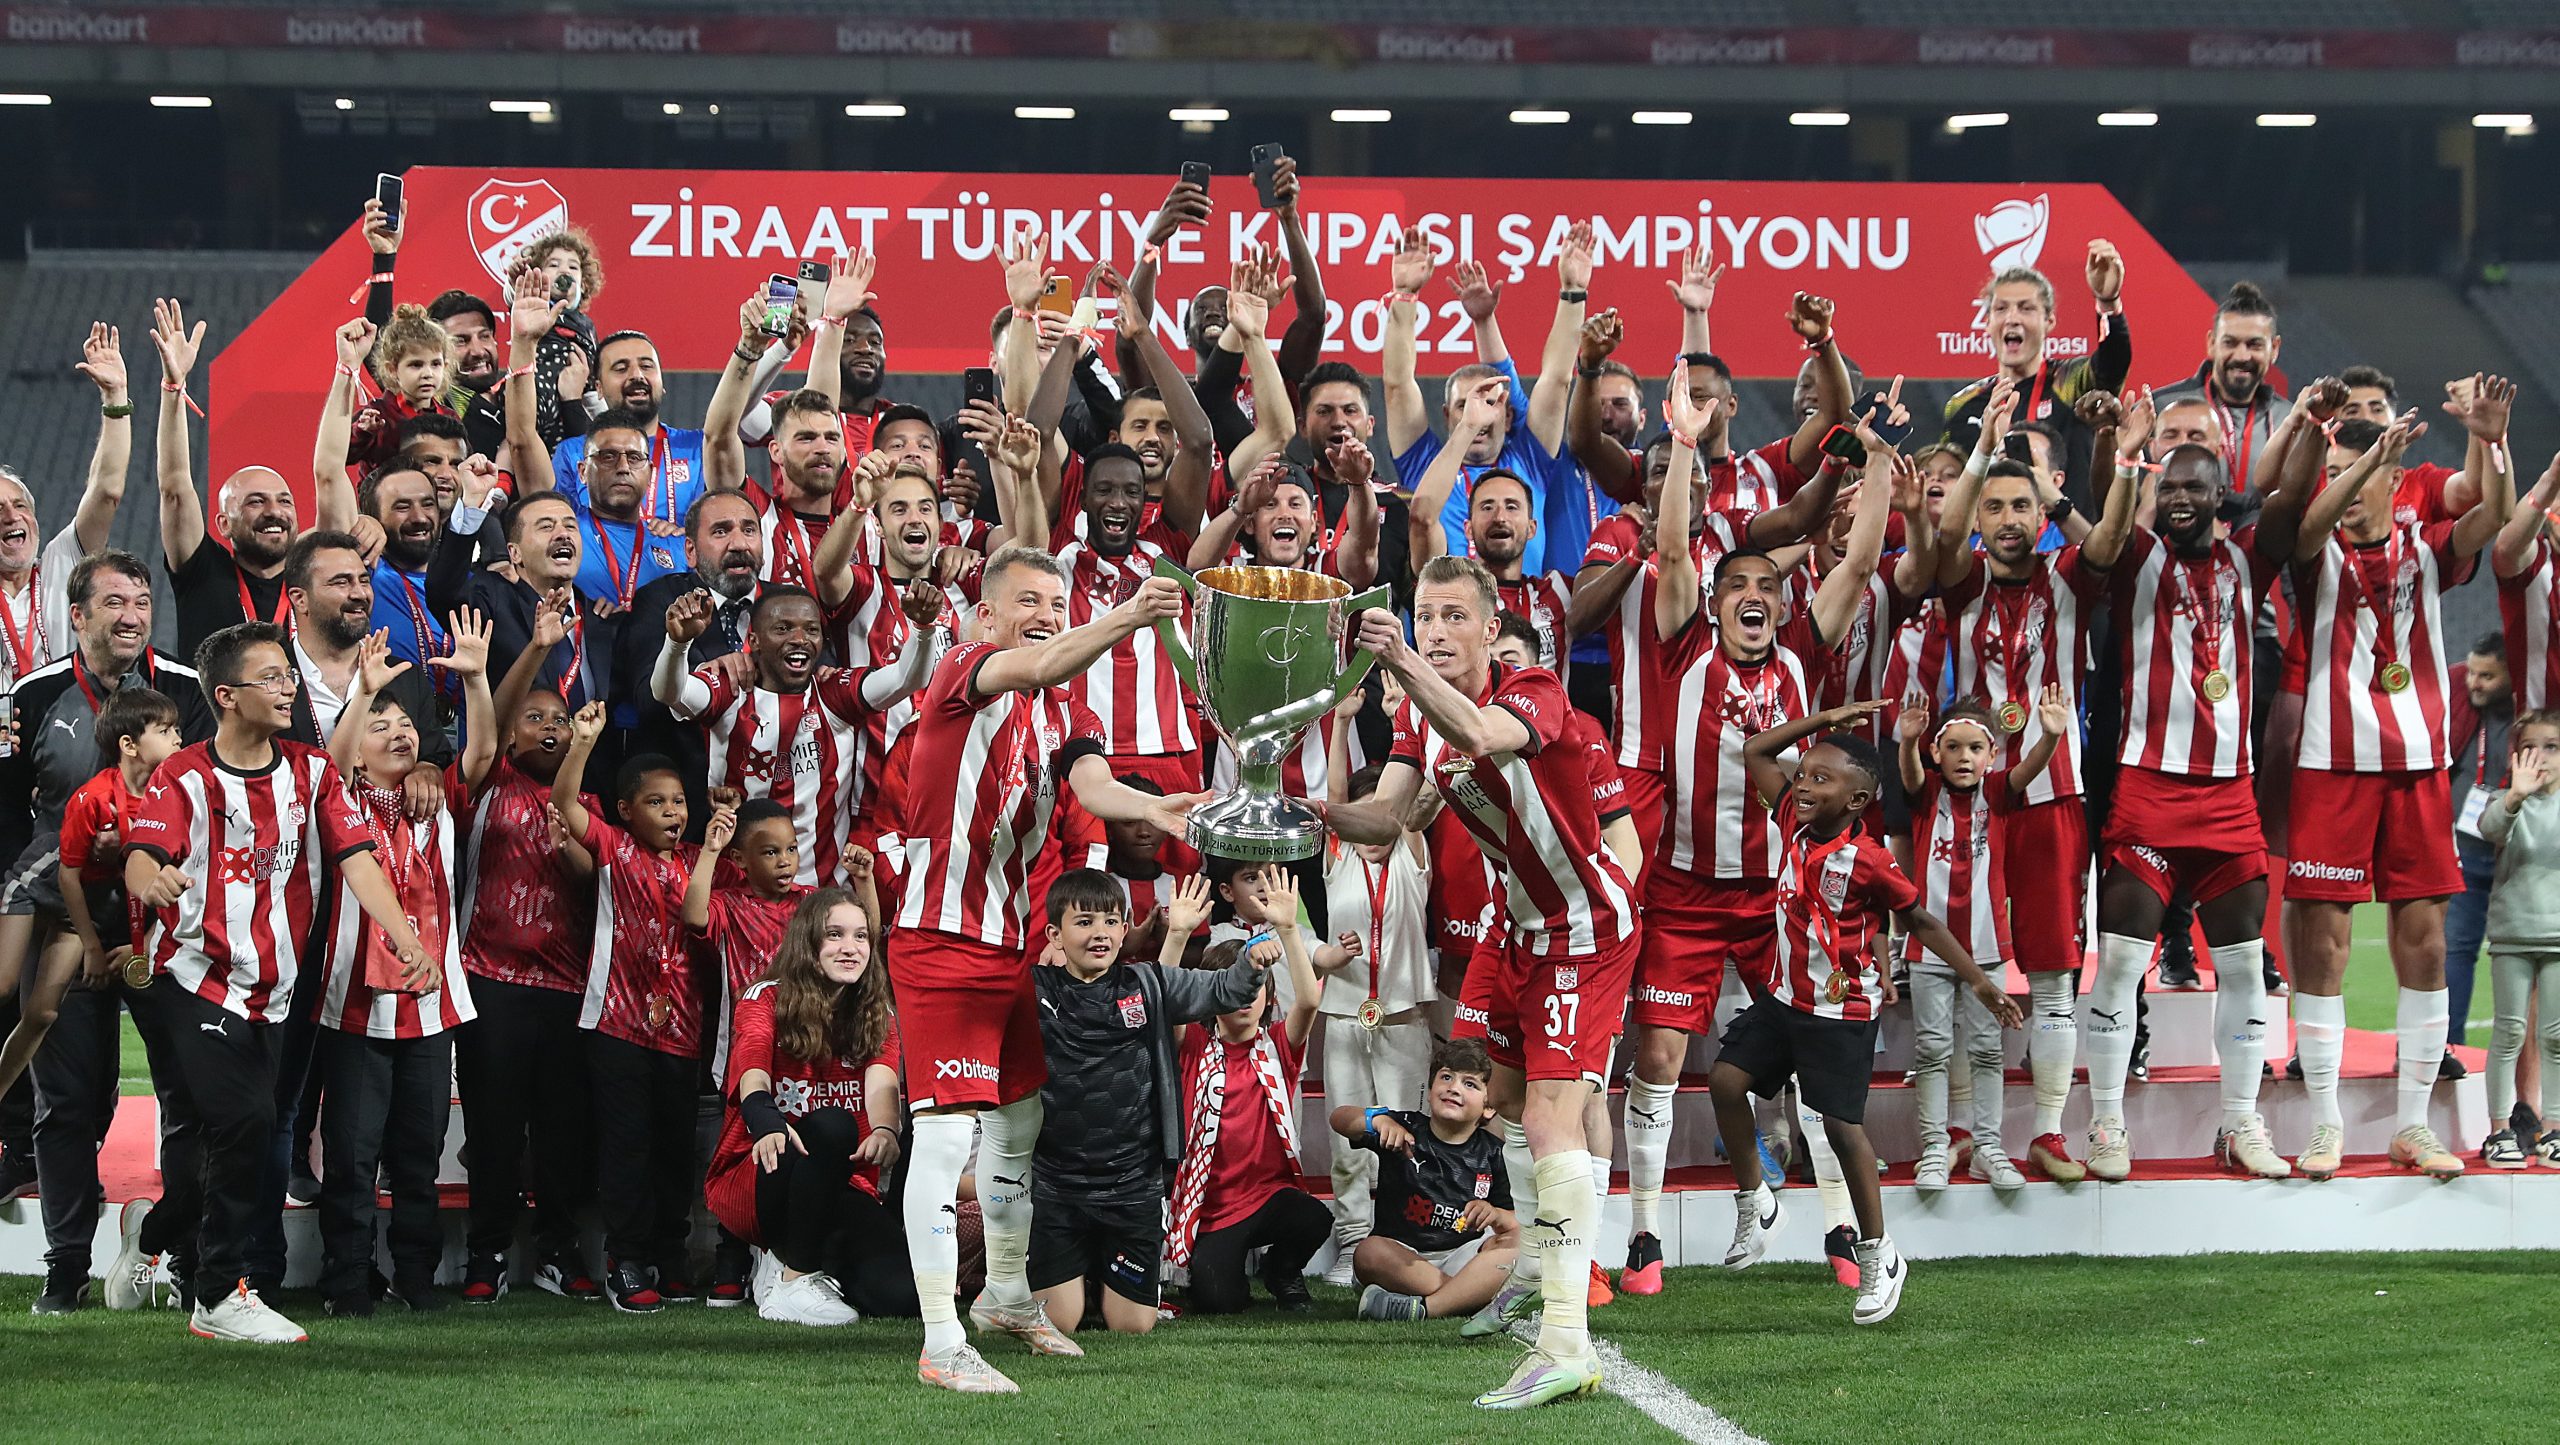 Ziraat Türkiye Kupası, Sivasspor’un